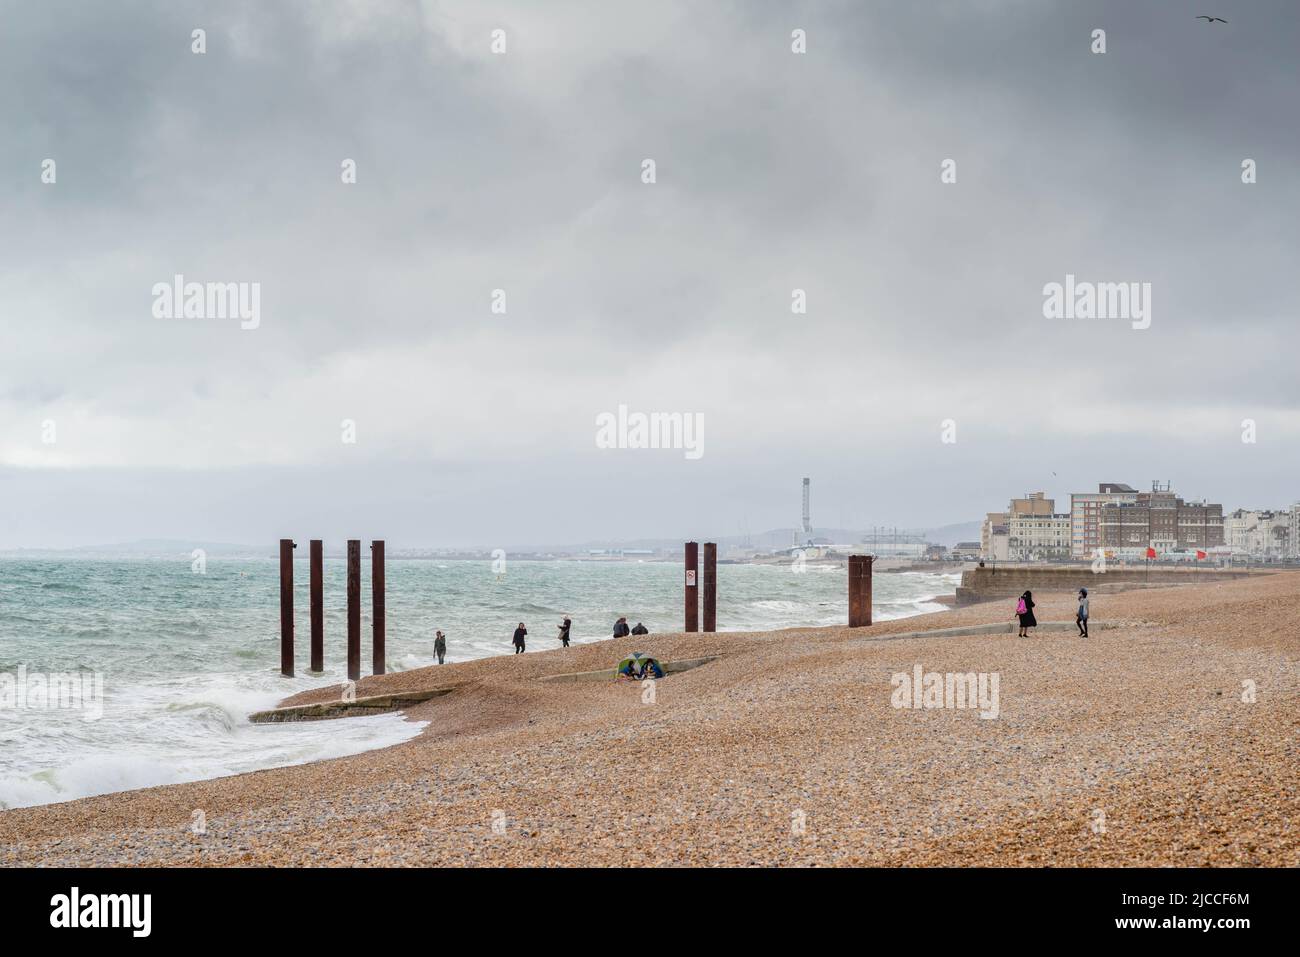 Brighton front de mer en direction de l'ouest vers Hove par une journée nuageux, Brighton et Hove, East Sussex, Angleterre, Royaume-Uni Banque D'Images